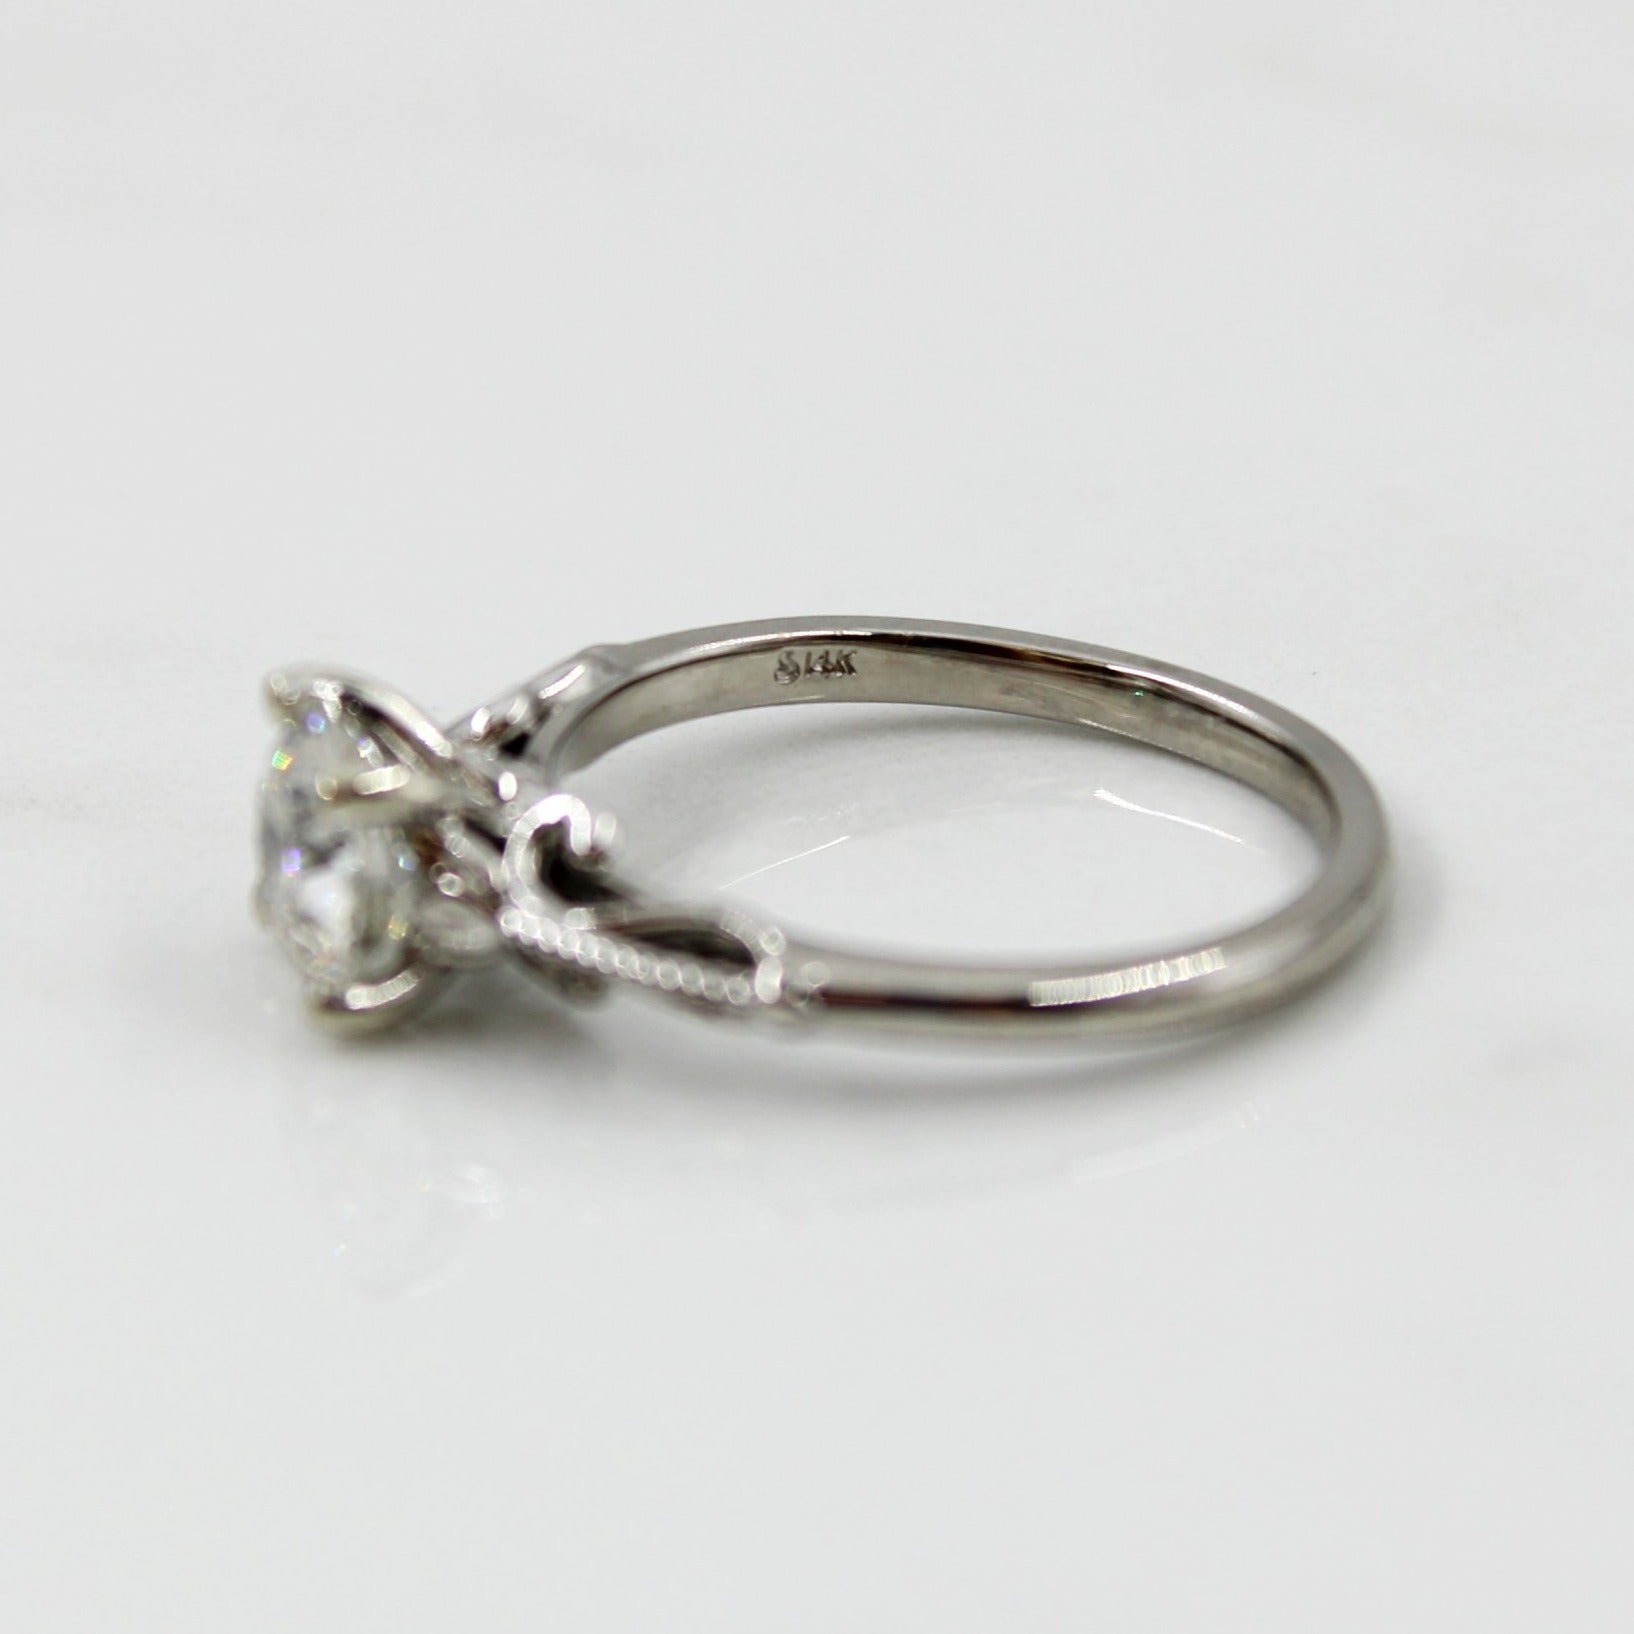 'Bespoke' Lotus Inspired Engagement Ring | 1.20ct | SZ 7 |